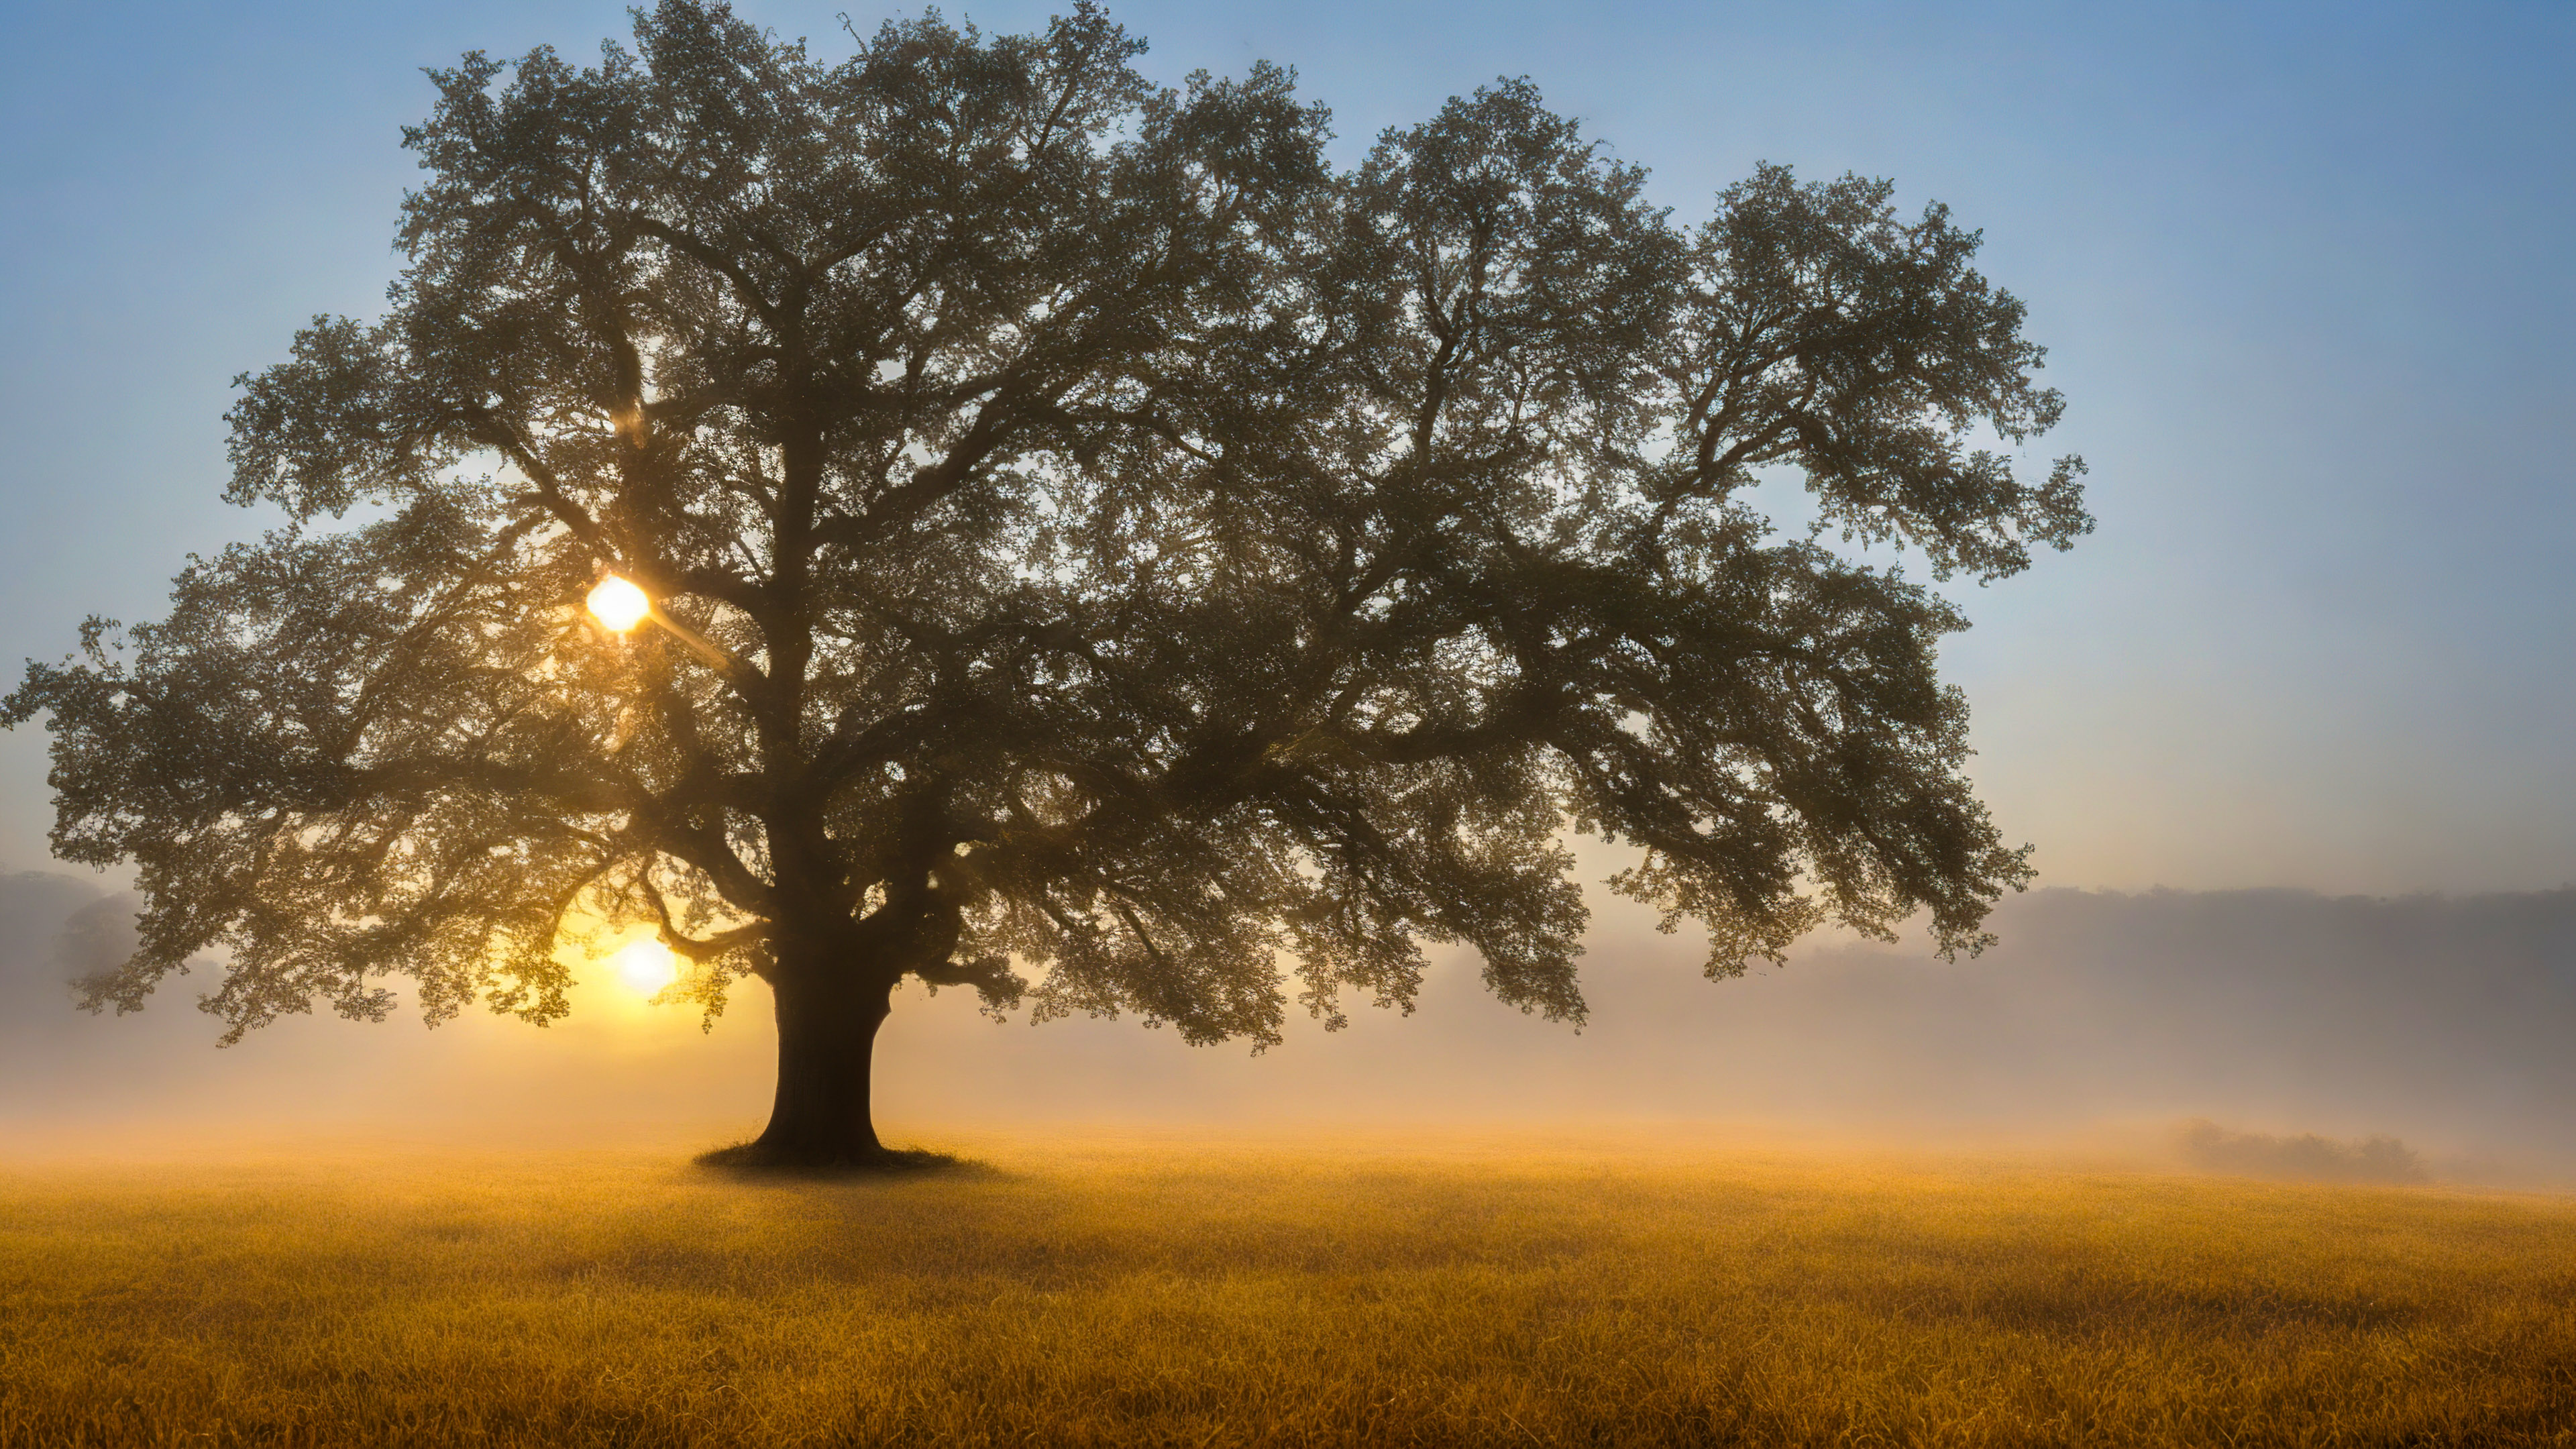 Vivez la solitude avec notre beau papier peint de paysage, présentant un chêne majestueux se tenant seul dans un champ brumeux, avec en toile de fond le lever du soleil.